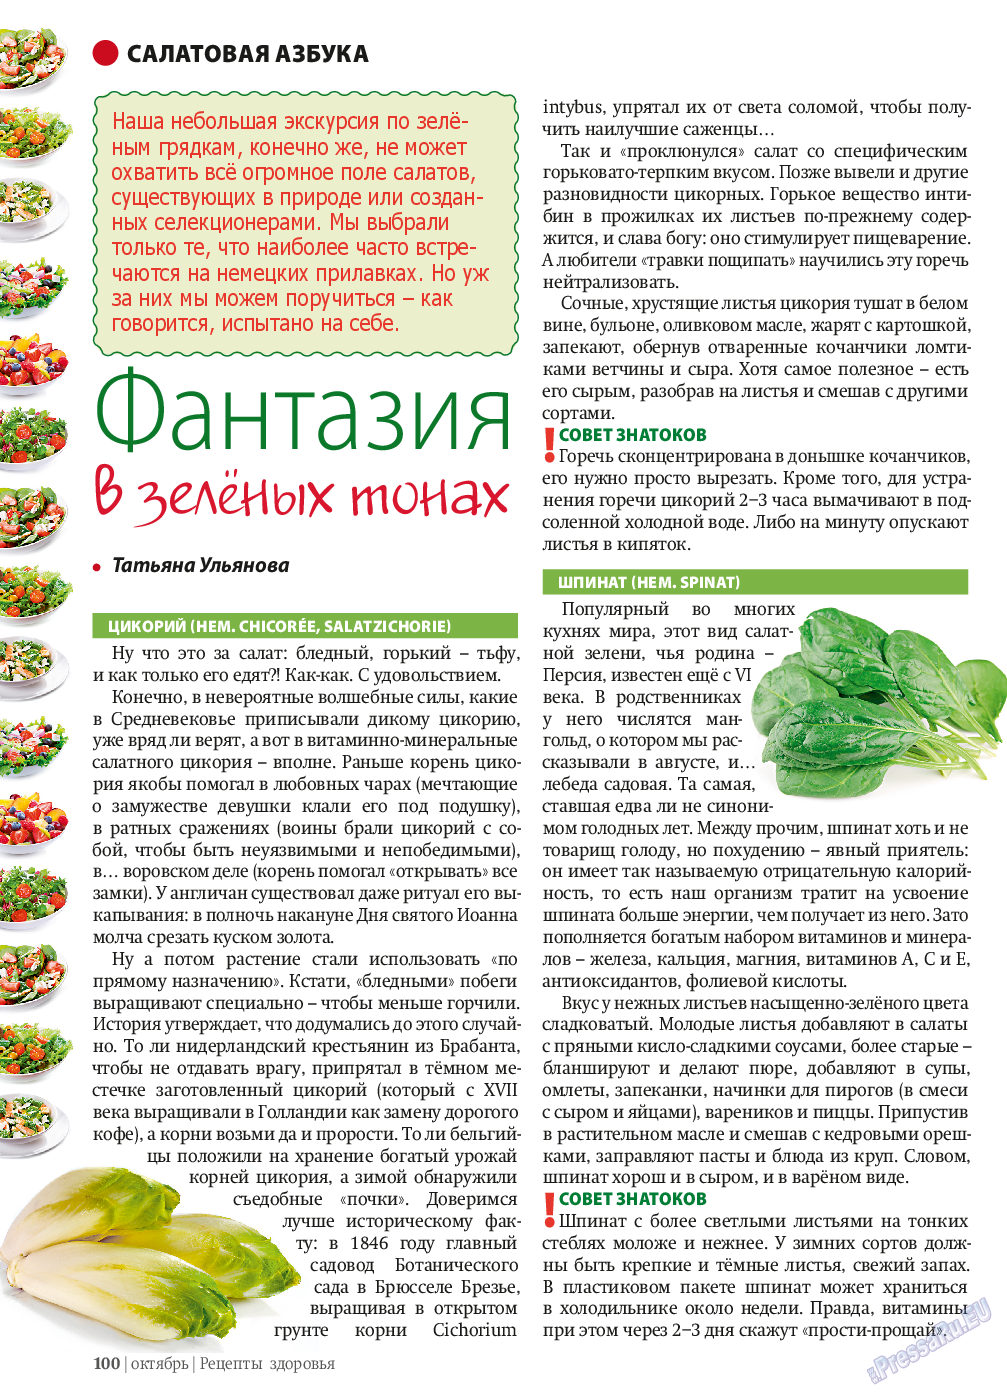 Рецепты здоровья, журнал. 2013 №10 стр.100